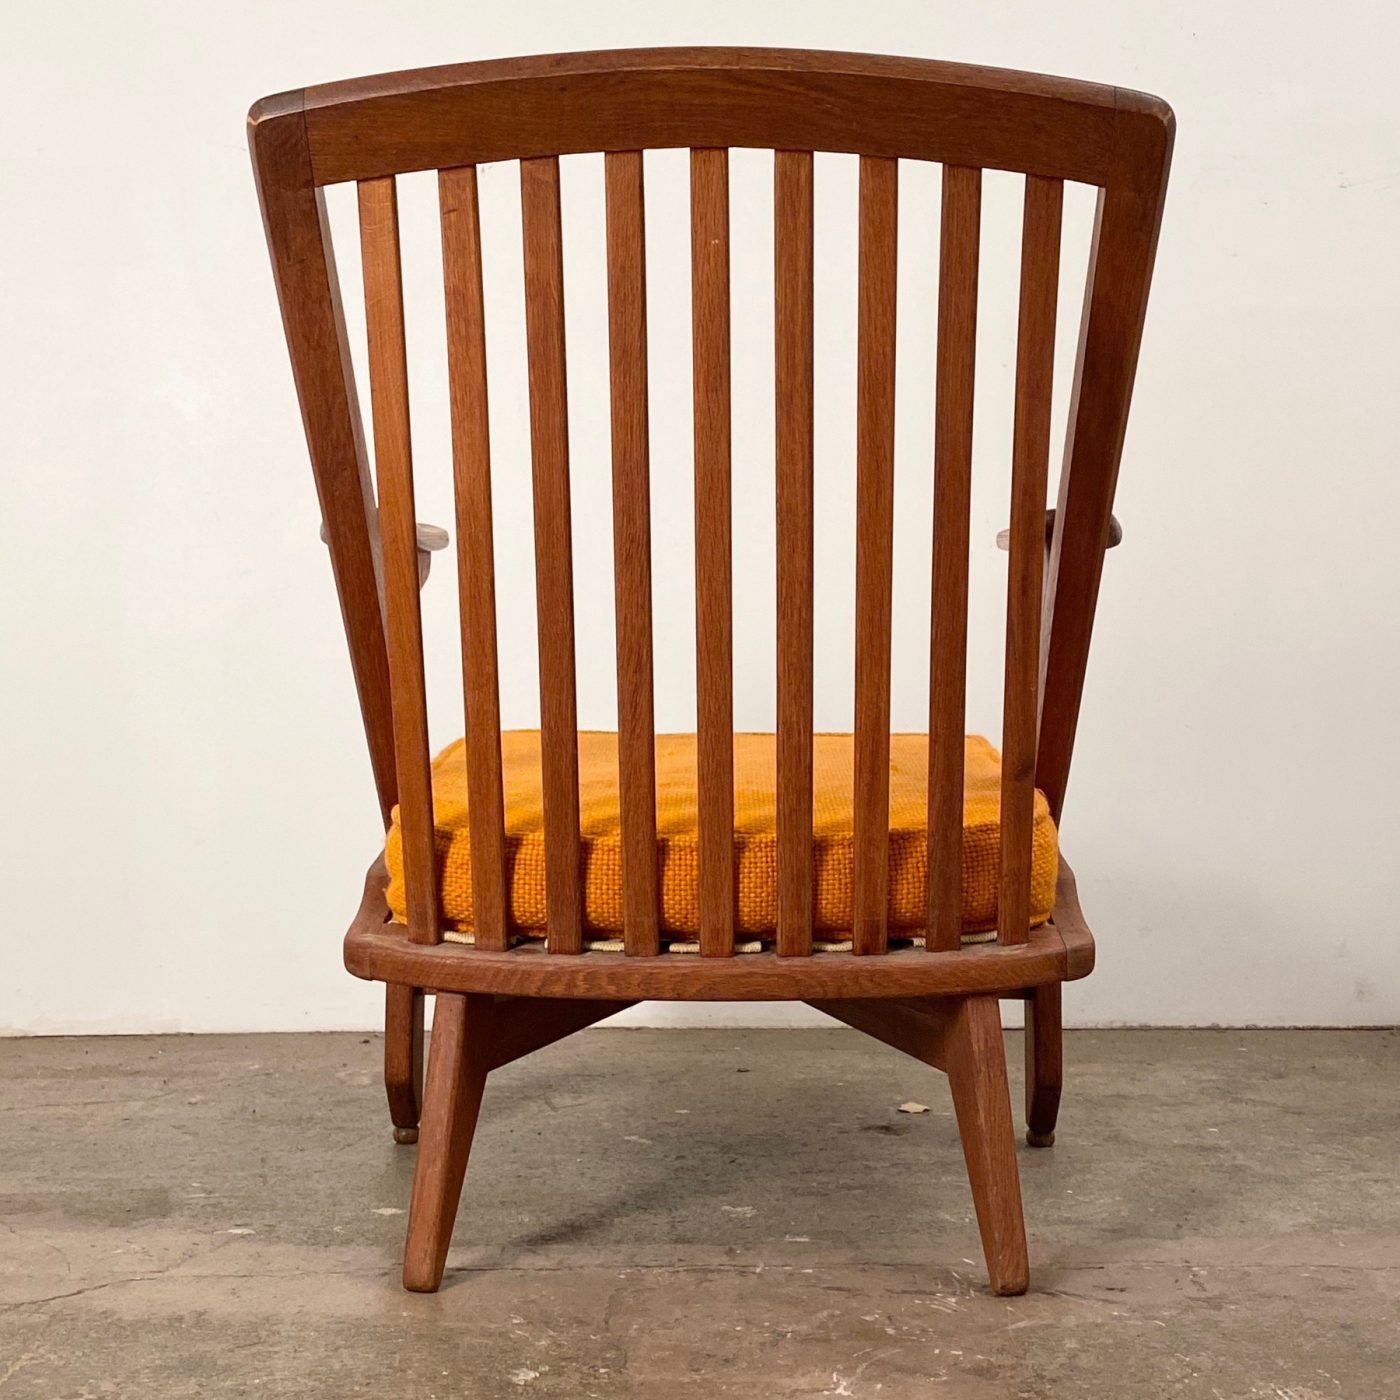 objet-vagabond-guillerme-armchairs0004